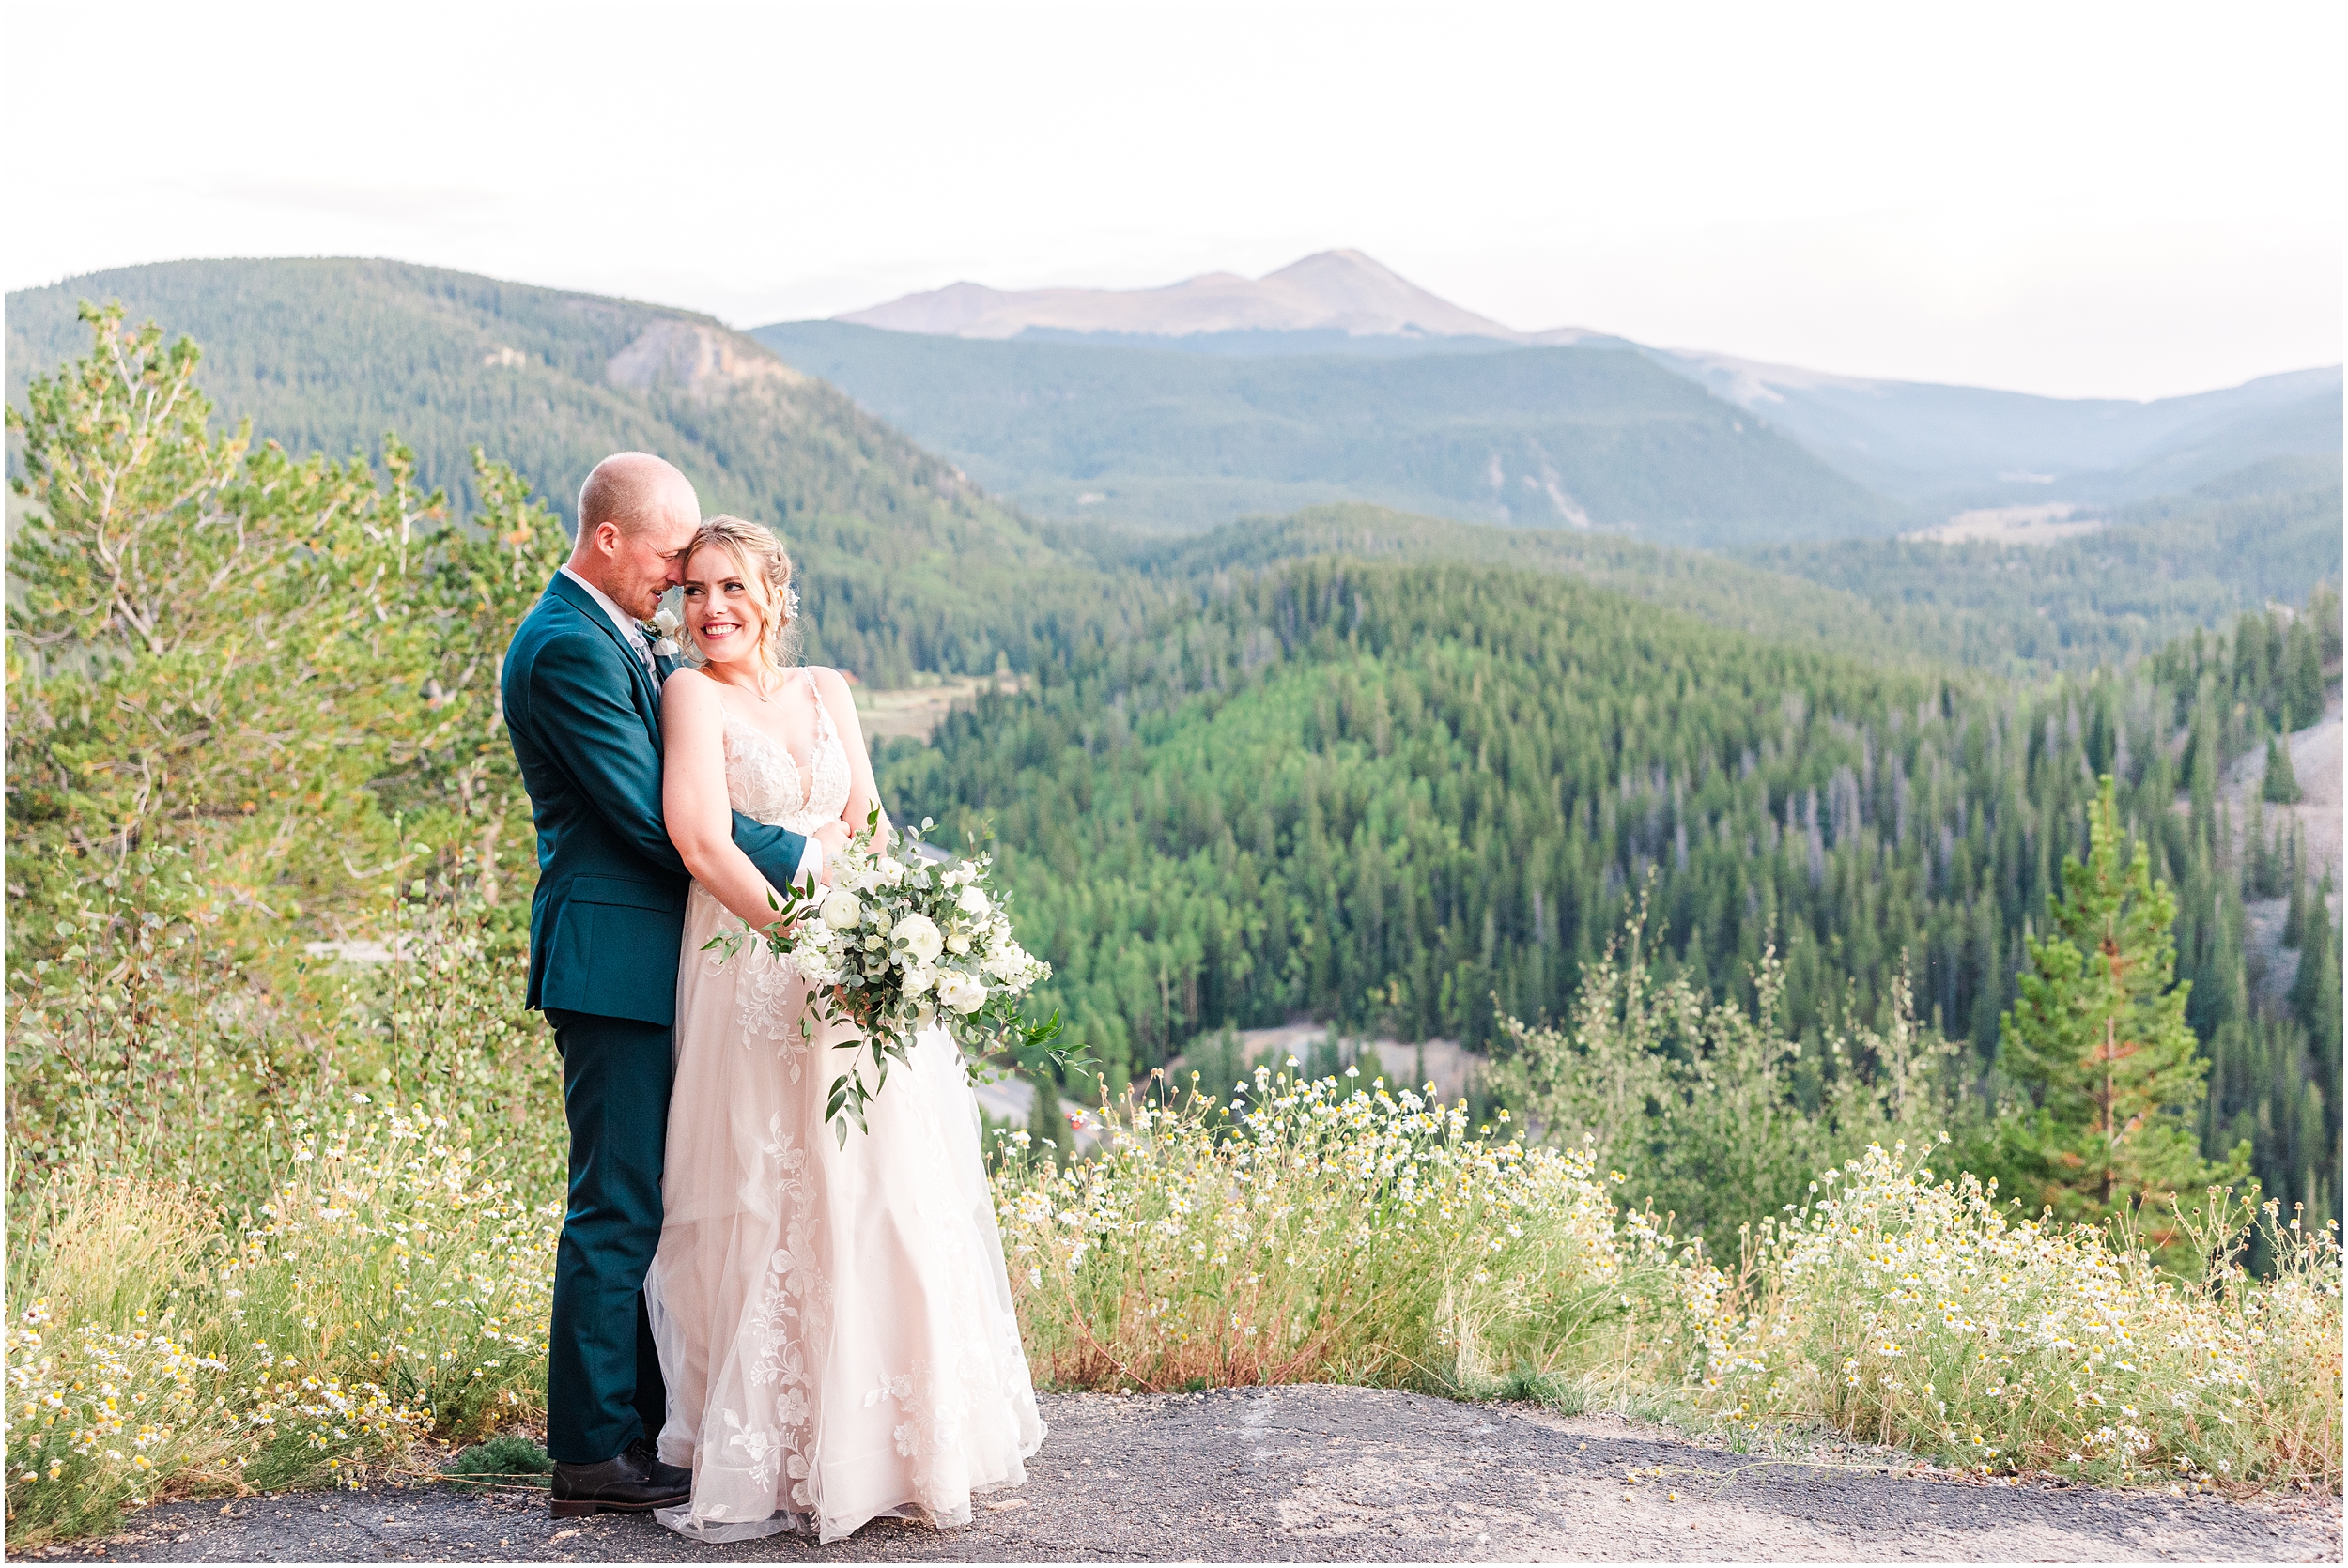 Brendan & Kristie Lodge at Breckenridge Colorado Destination Wedding